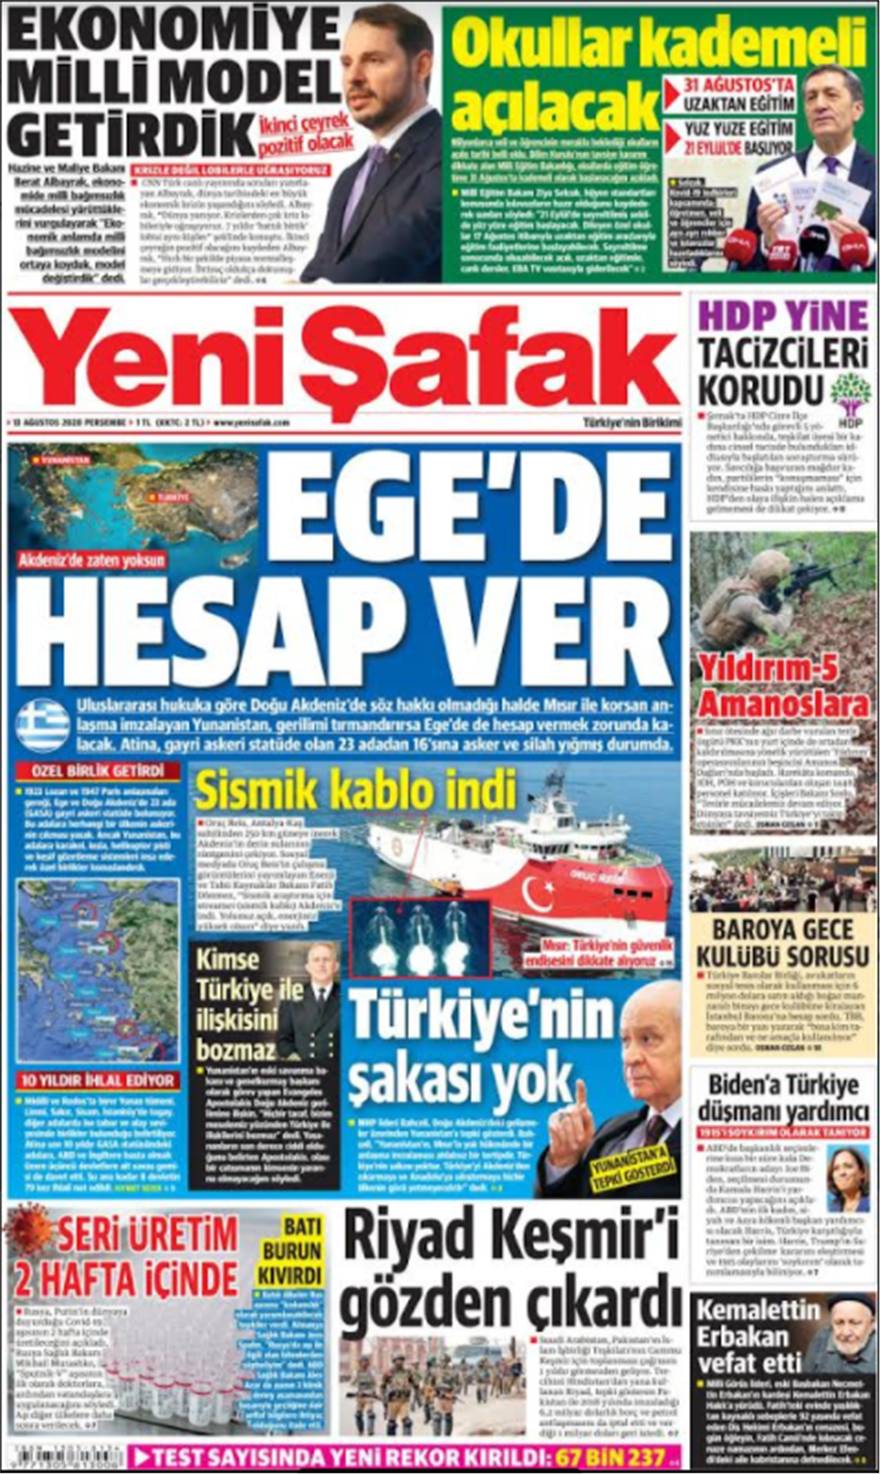 Η ισλαμιστική τουρκική εφημερίδα Yeni Safak δημοσίευσε άρθρο που φανερώνει τις τουρκικές προθέσεις και απειλεί ανοικτά τα νησιά μας Λήμνος, Λέσβος, Κως και Ρόδος στο τουρκικό στόχαστρο!